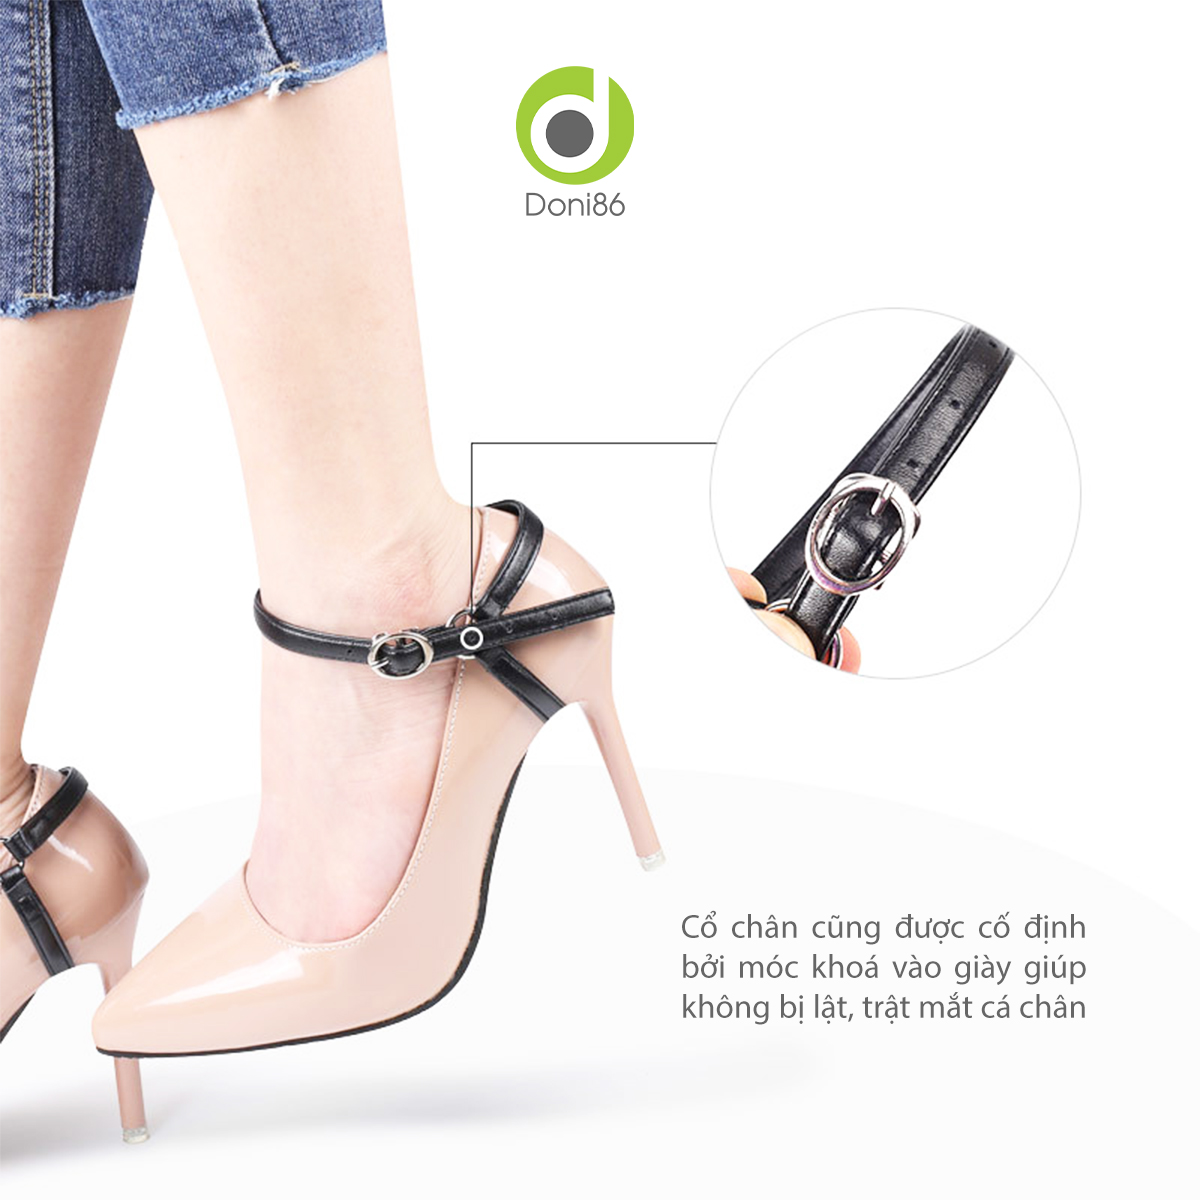 Quai giày chữ Y giúp chống tuột, rớt gót khi mang giày cao gót, dép cao gót - Doni - DOPK51